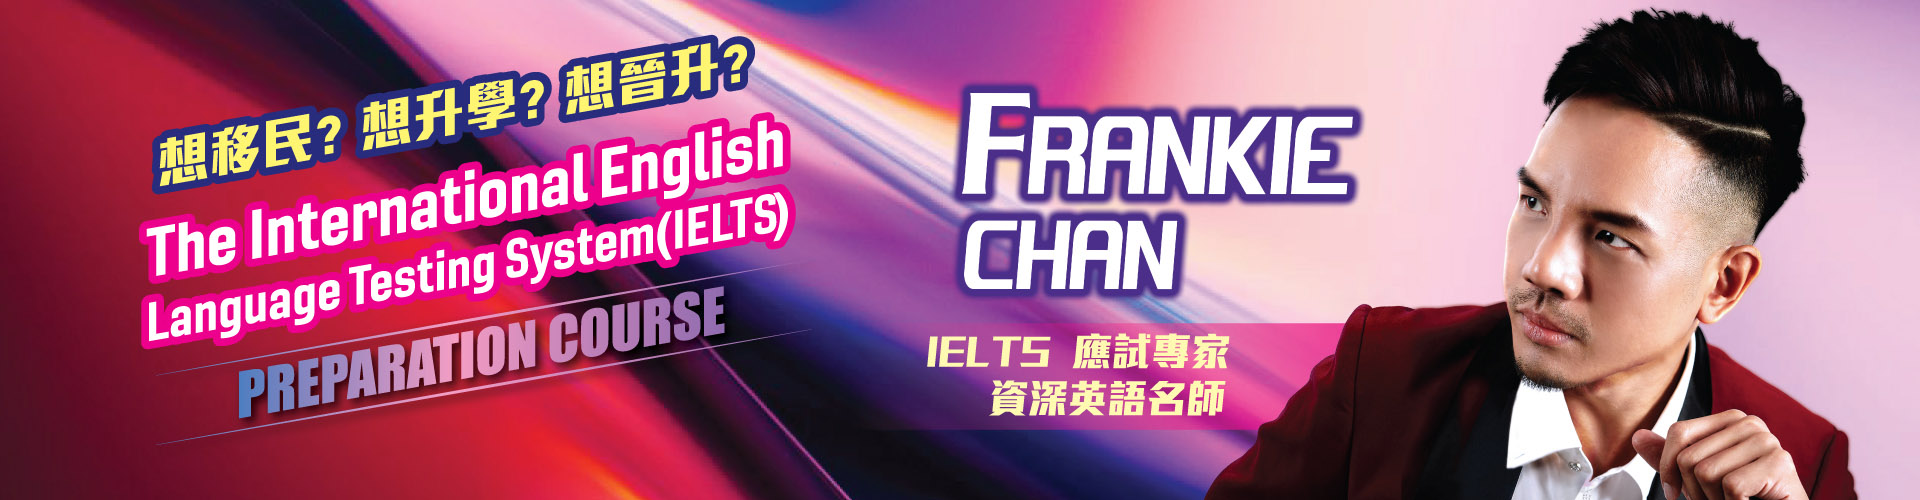 IELTS - Frankie Chan 專業英語課程